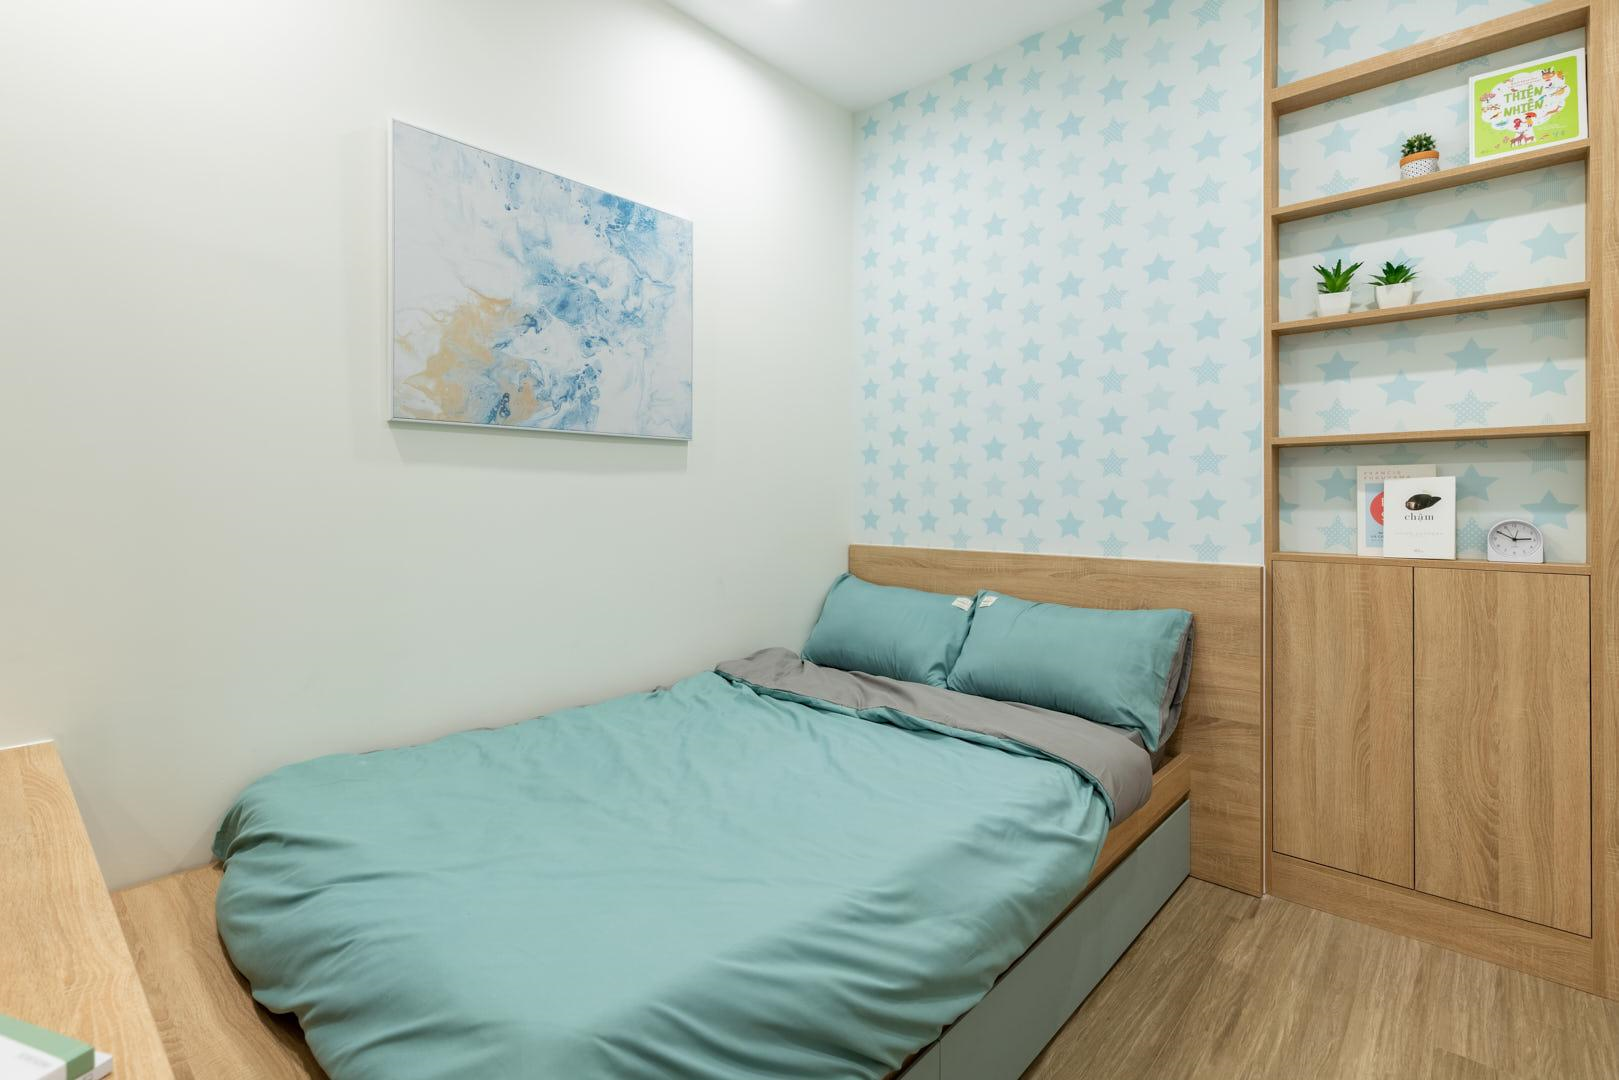 Phòng ngủ nhỏ được thiết kế nội thất thông minh nhằm tiết kiệm diện tích